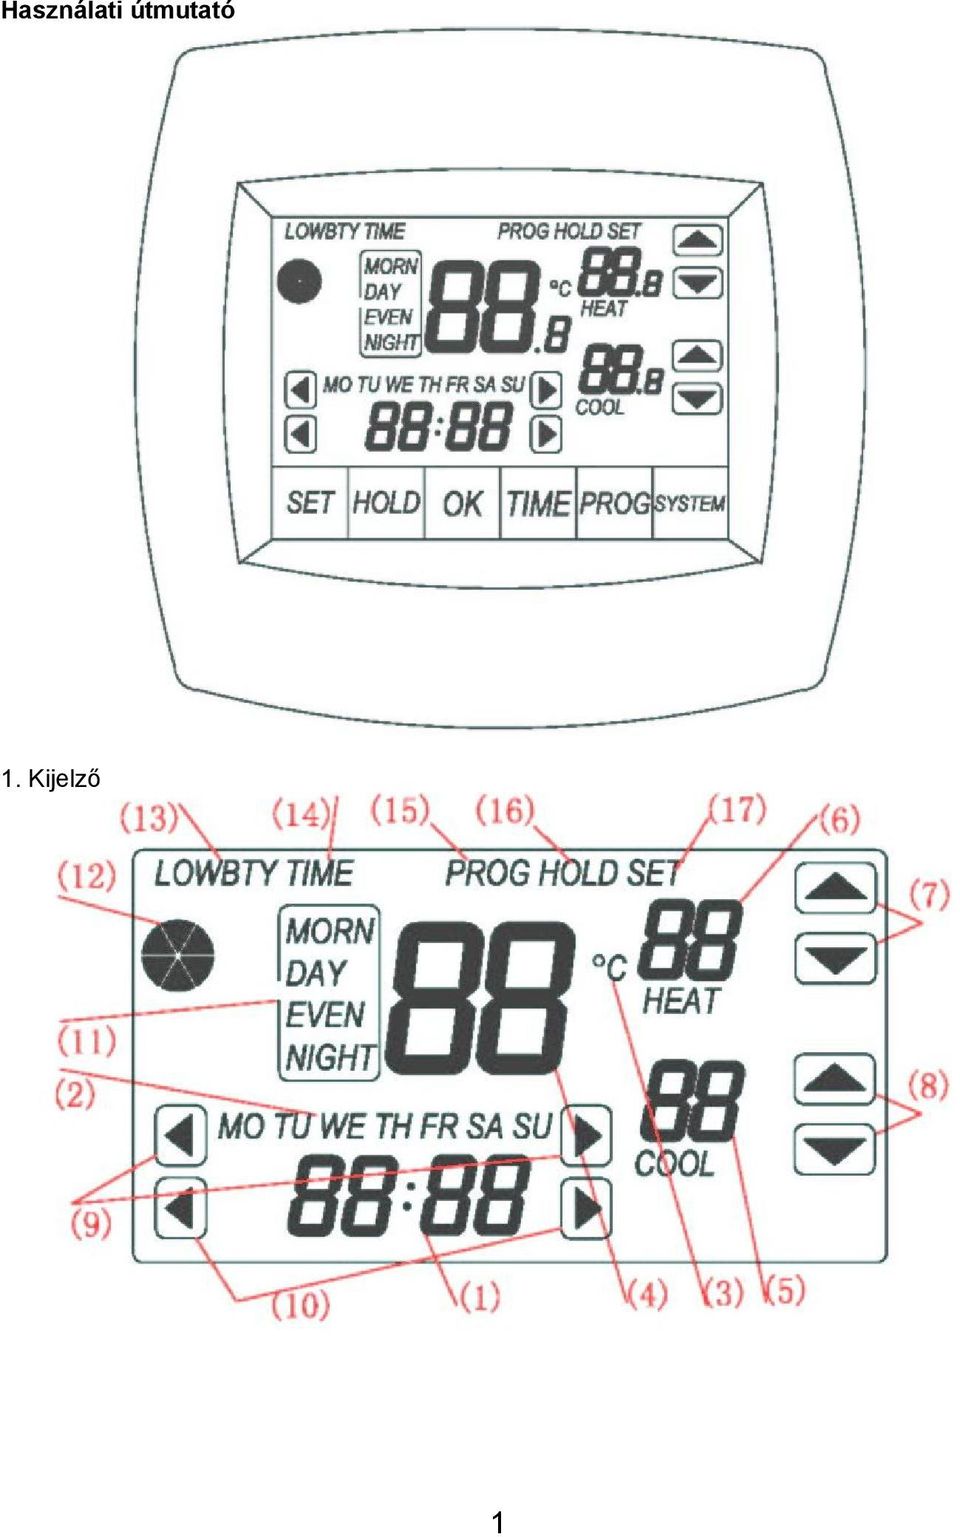 HQ-TH40. Programozható termosztát érintőképernyővel ANLEITUNG MANUALE HASZNÁLATI  ÚTMUTATÓ KÄYTTÖOHJE NÁVOD K POUŽITÍ BRUKSANVISNING - PDF Ingyenes letöltés